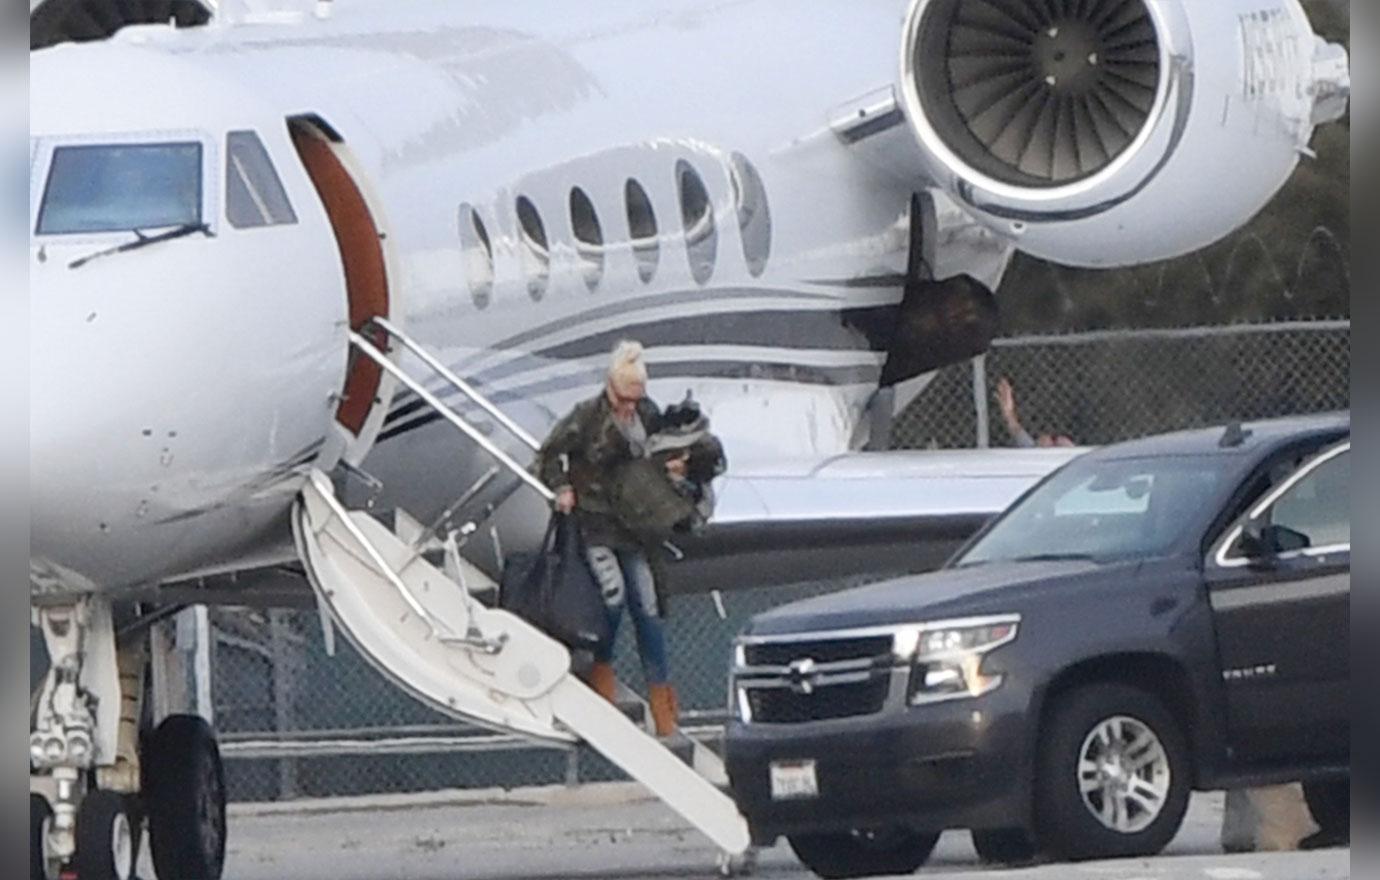 Gwen Stefani and Blake Shelton jet to Arizona